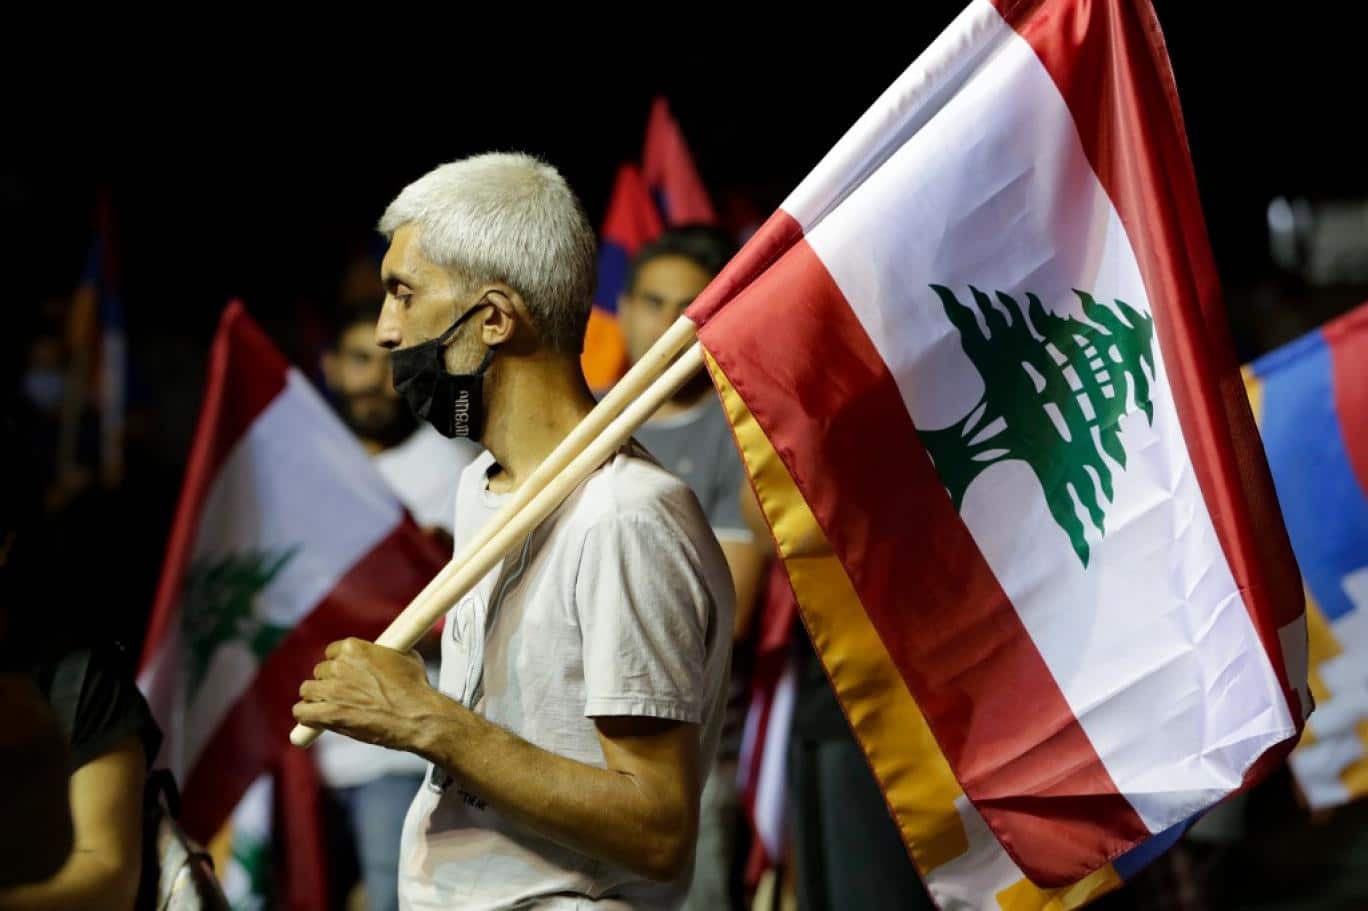 رفع الدعم الرسمي عن الأساسيات في لبنان هو عنوان الأزمة المقبلة watanserb.com